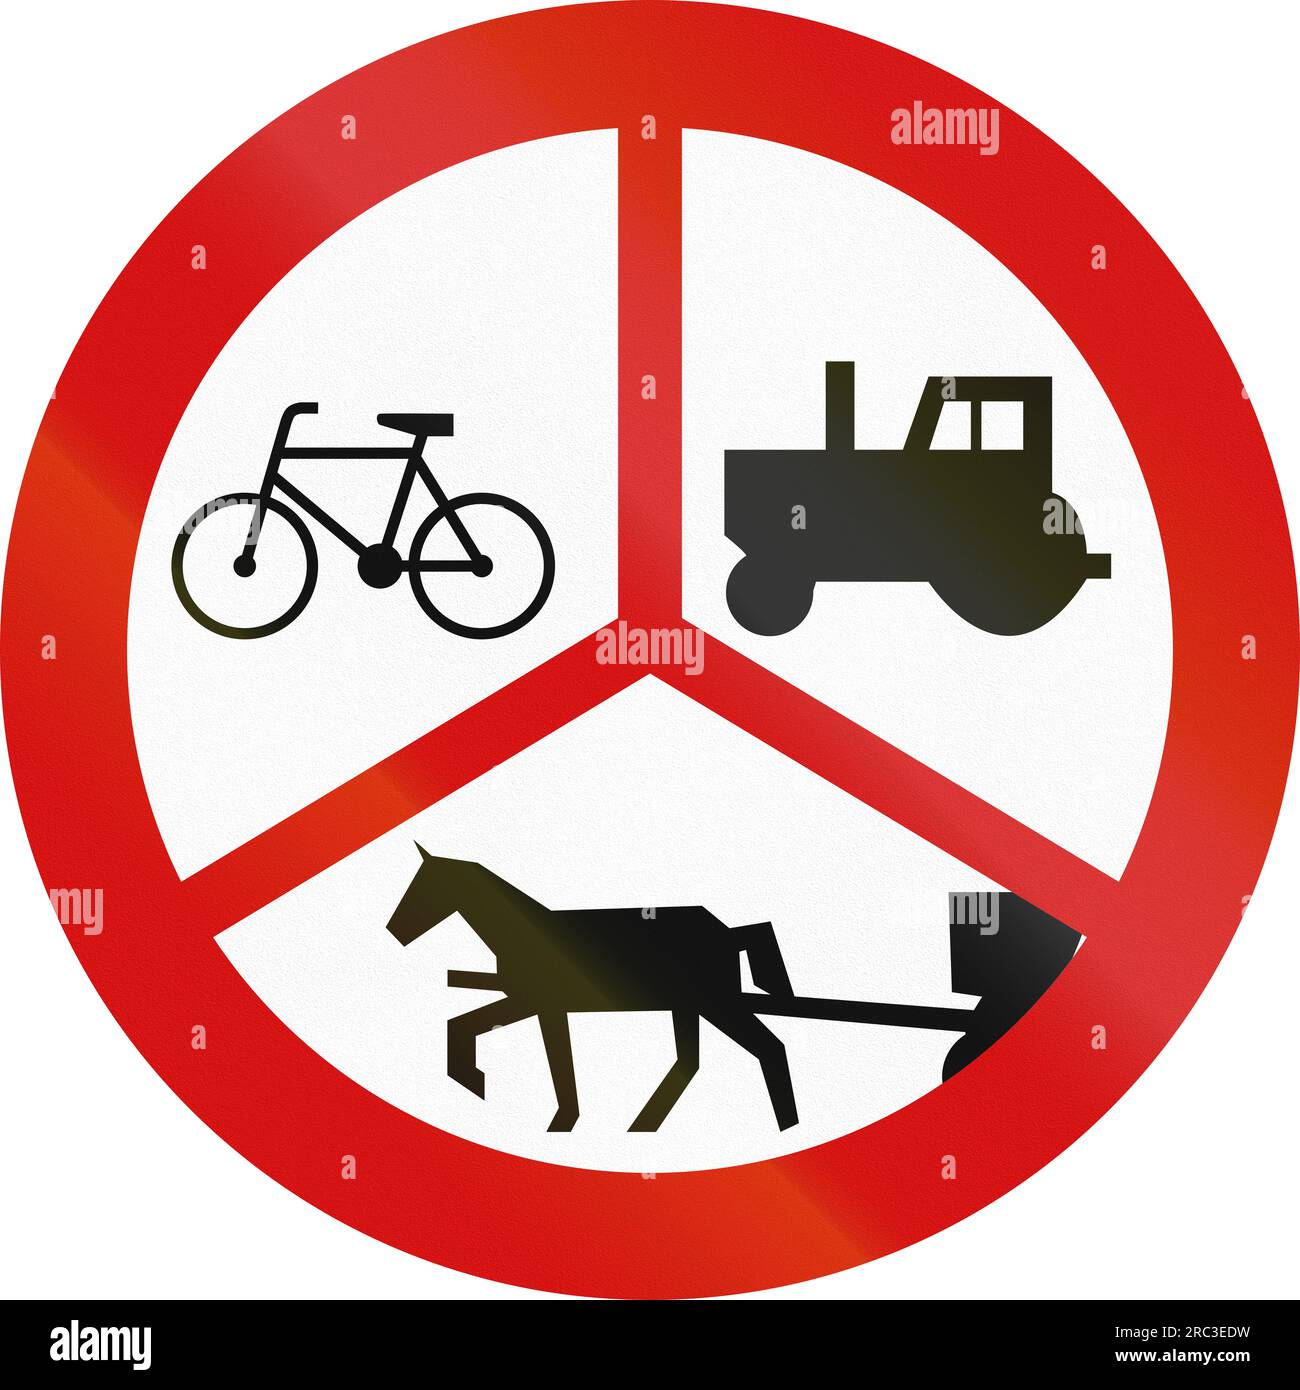 Señal de tráfico polaca: No hay tractores, vehículos de construcción, etc. o carruajes tirados por caballos o bicicletas. Foto de stock